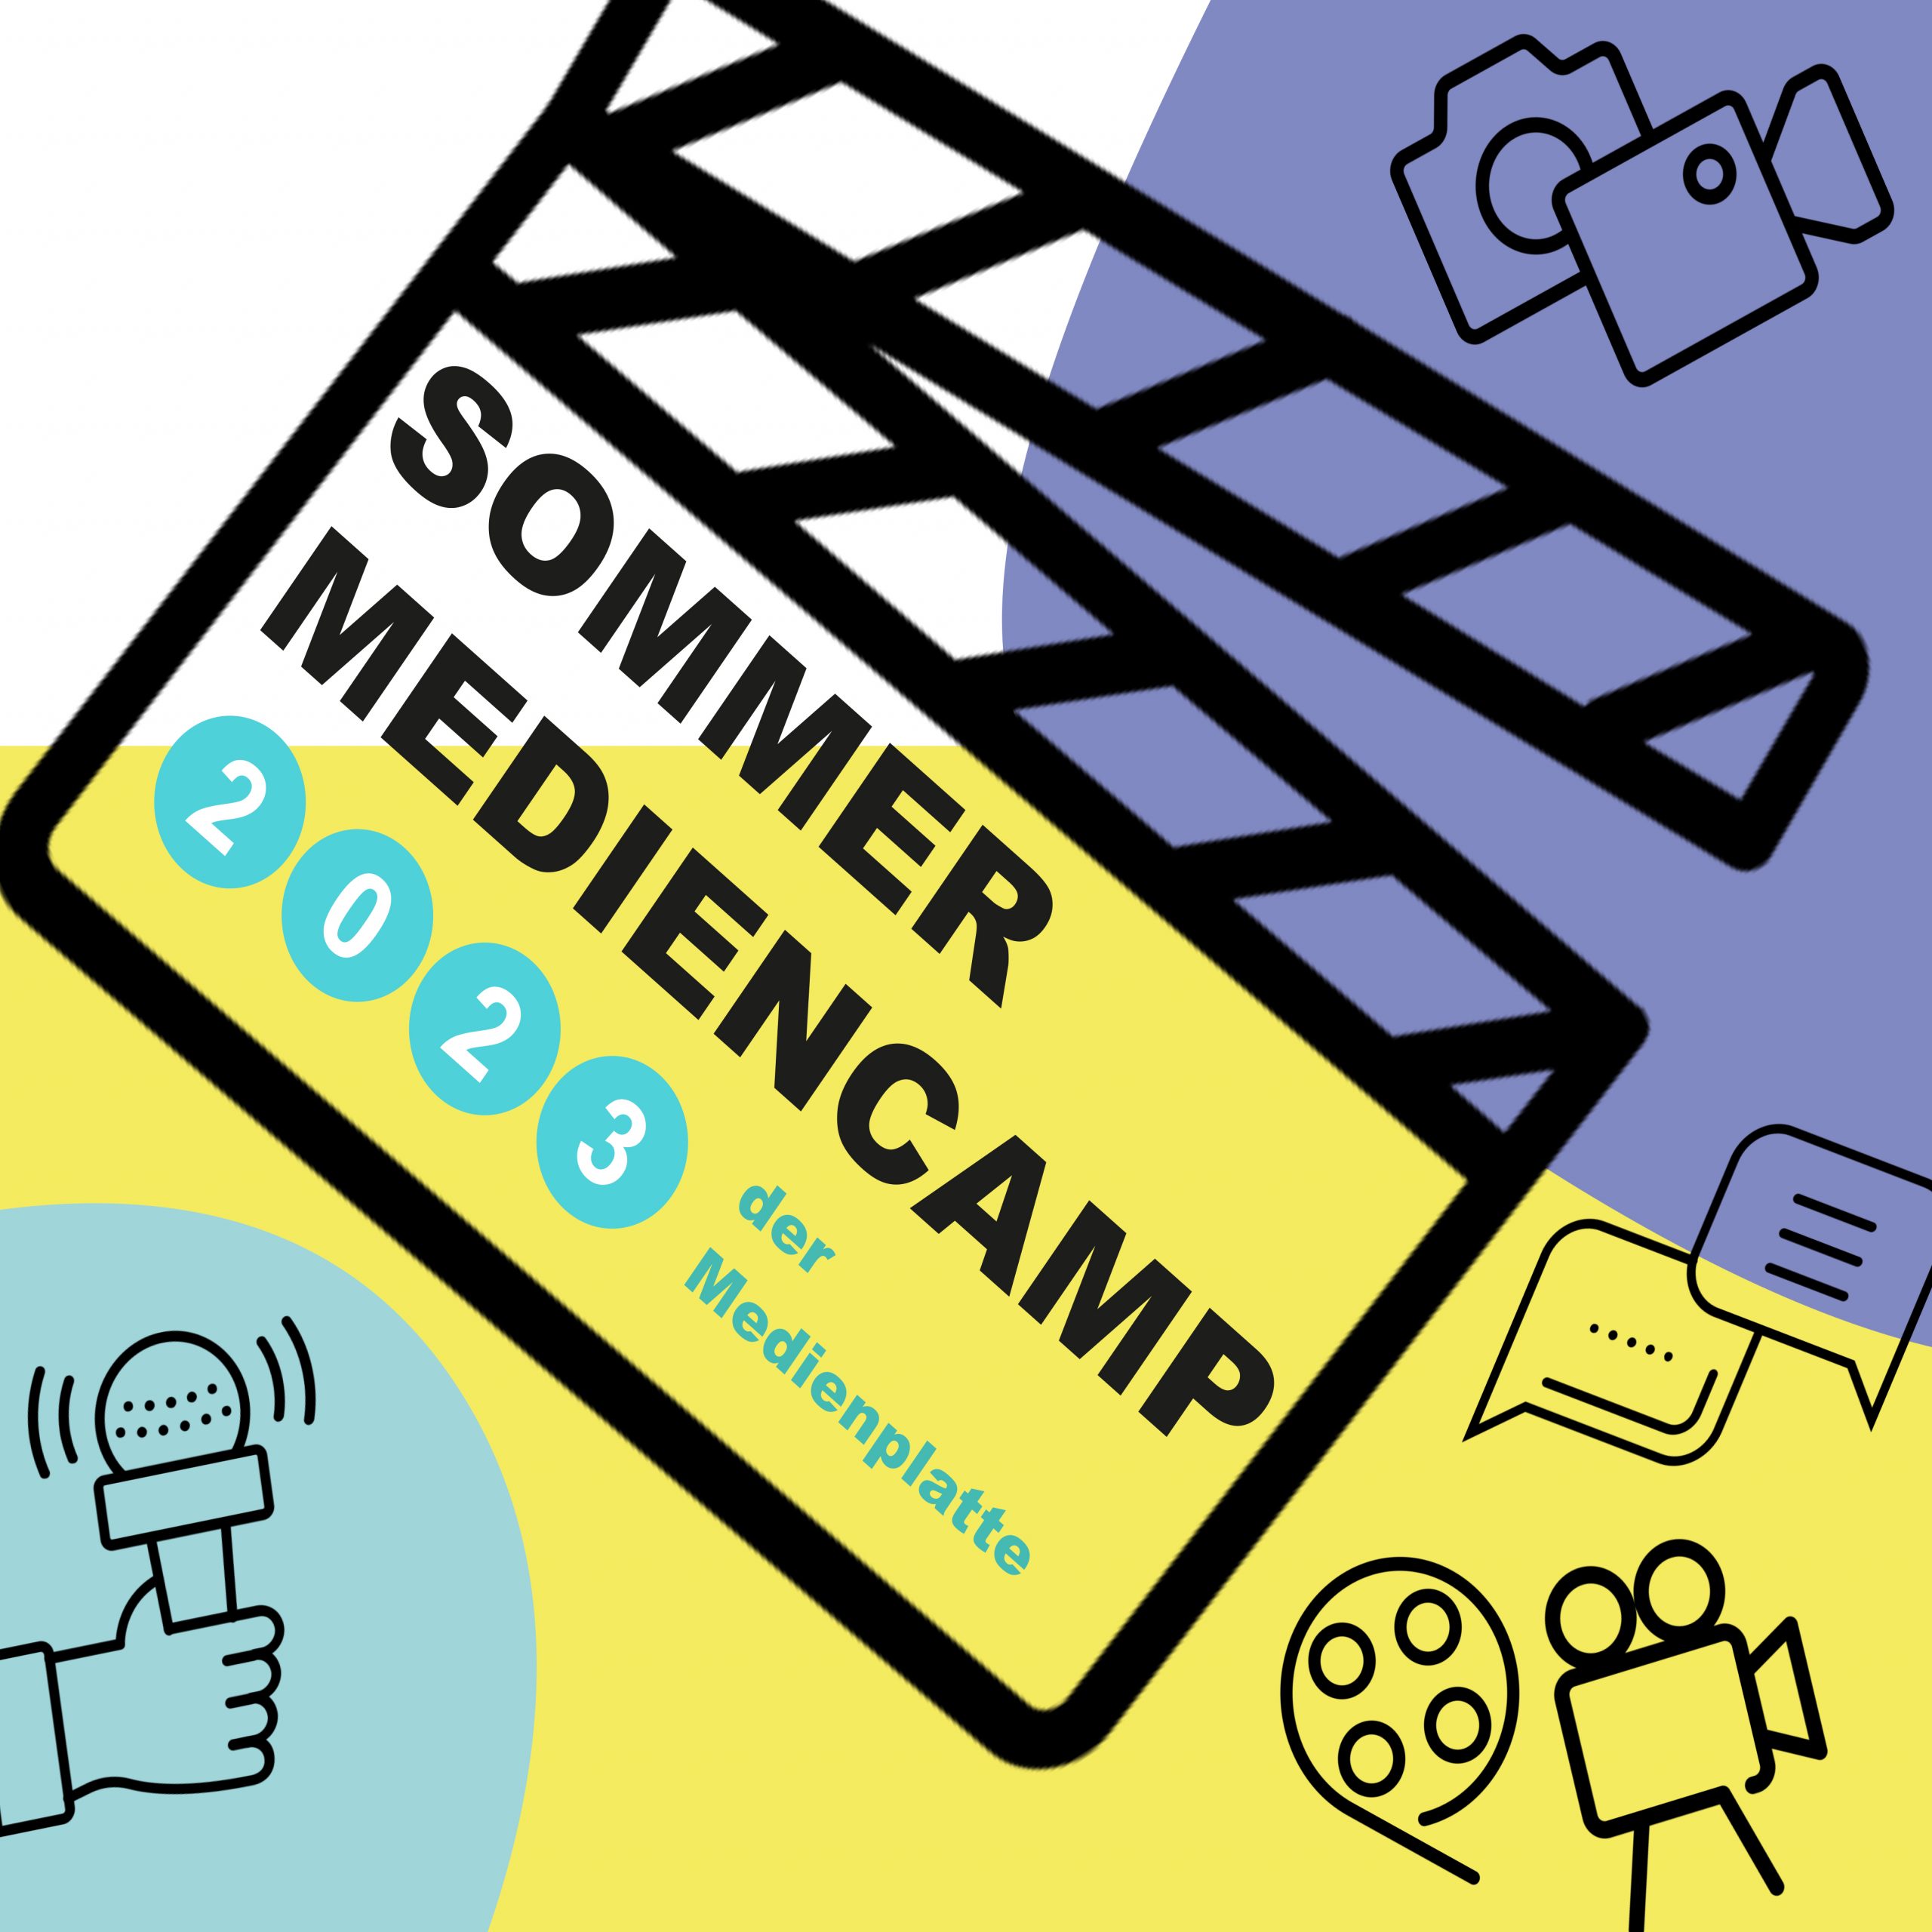 Sharepic mit den relevanten Daten zum Sommermediencamp der Medienplatte